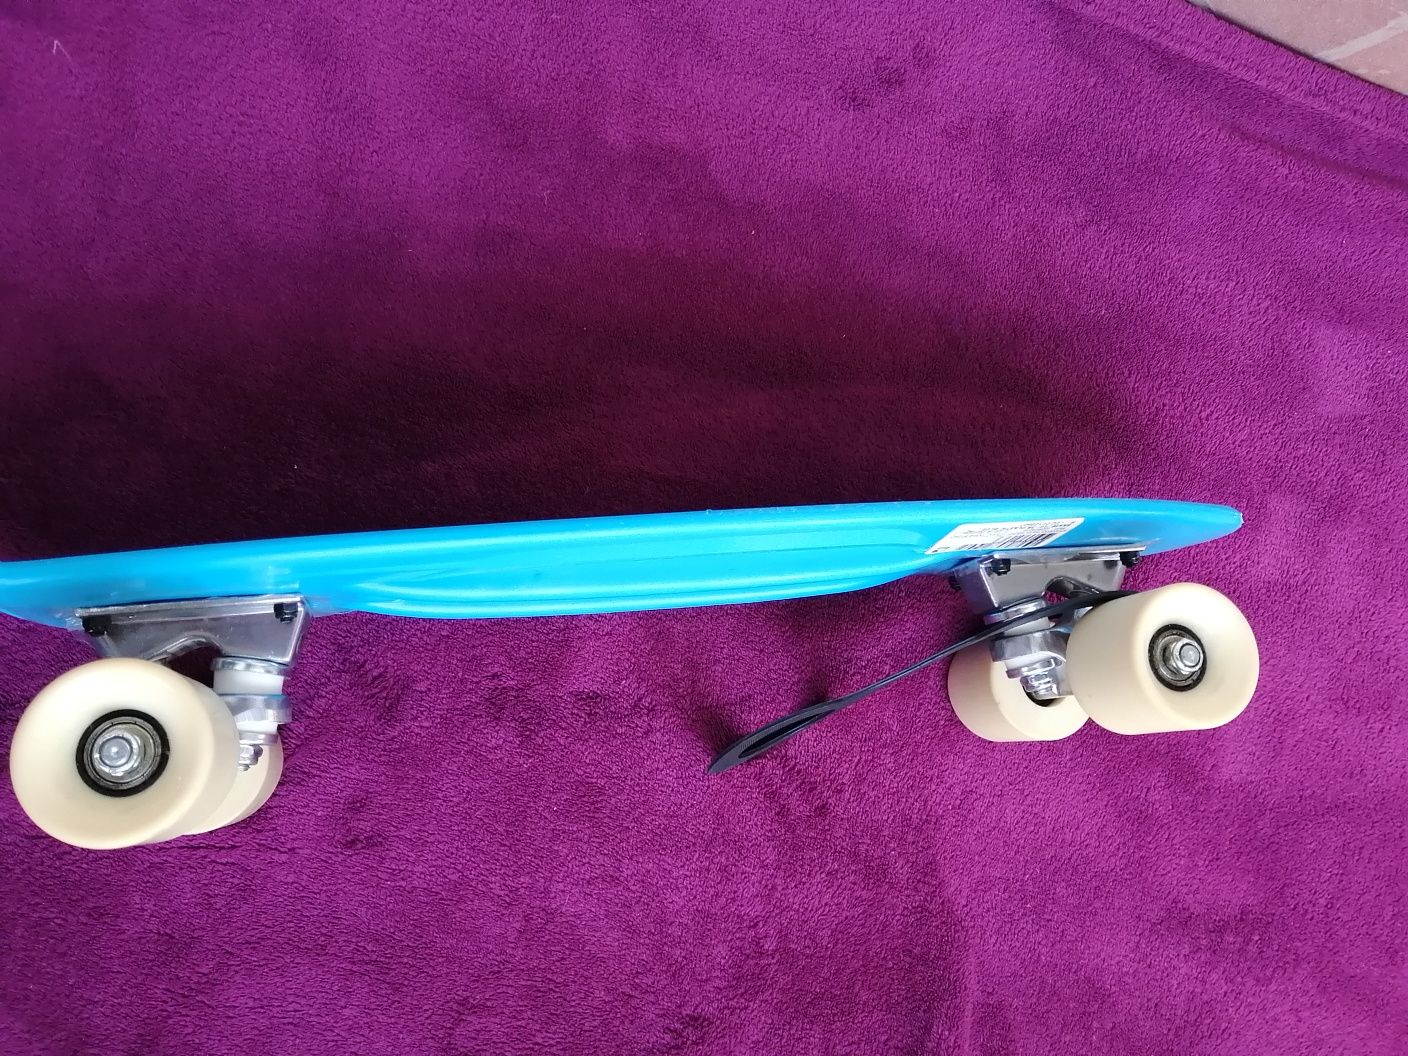 Skateboard și set protectie mărimea xs